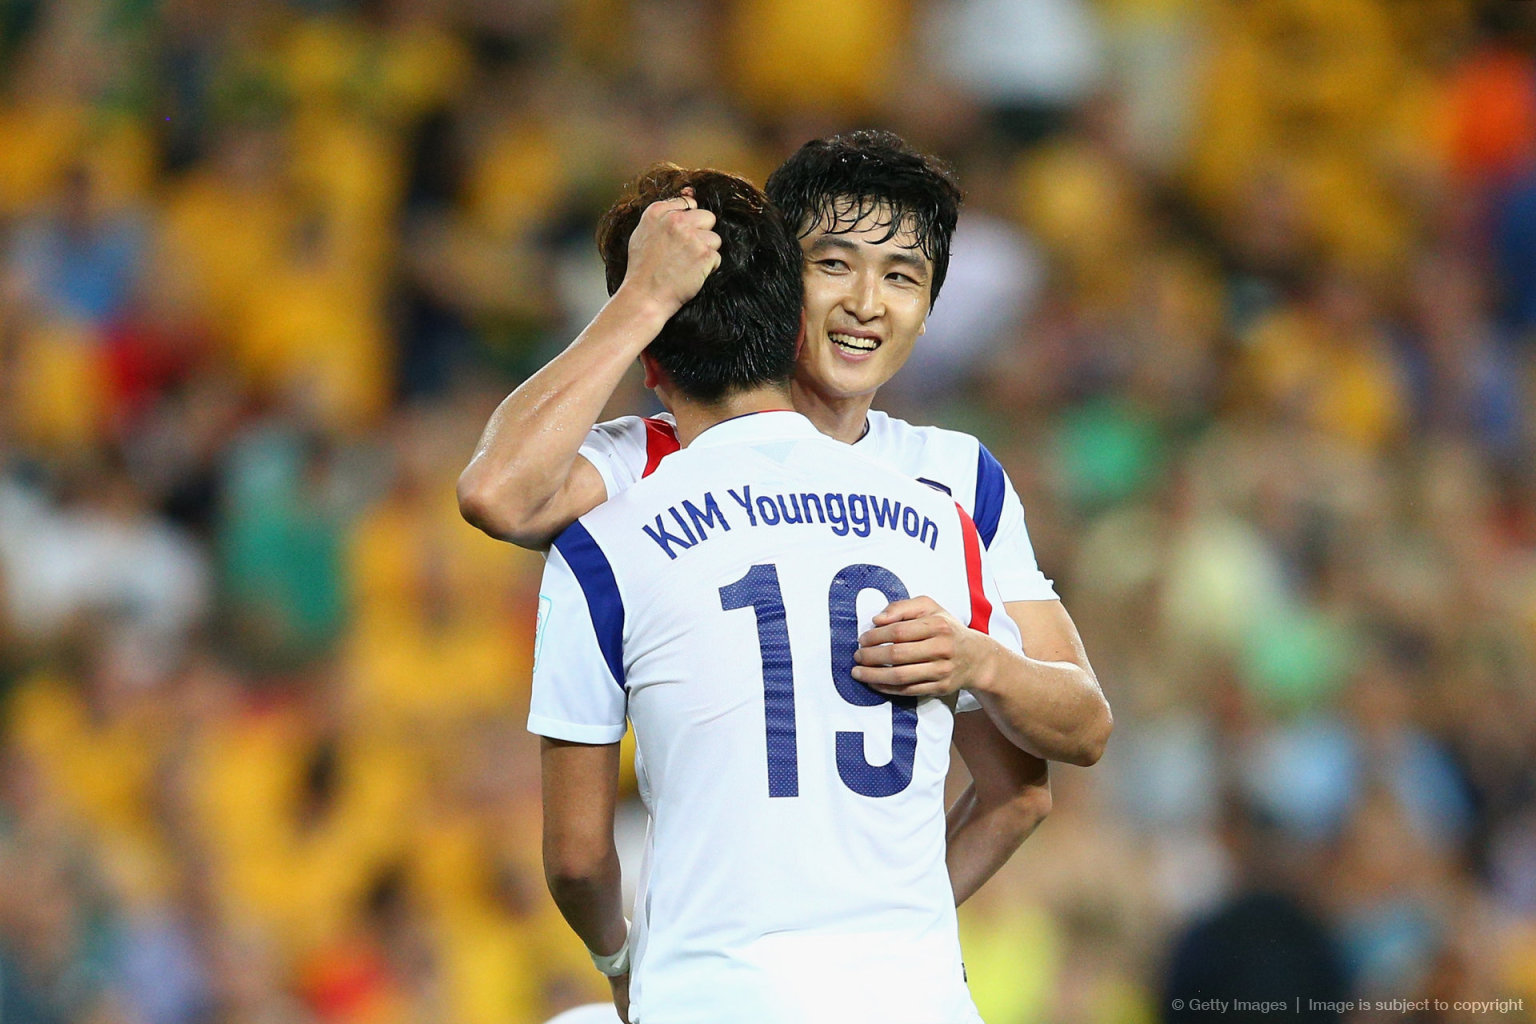 گزارش تصویری بازی استرالیا و کره جنوبی؛ میزبان هم مقابل کره به زانو در آمد